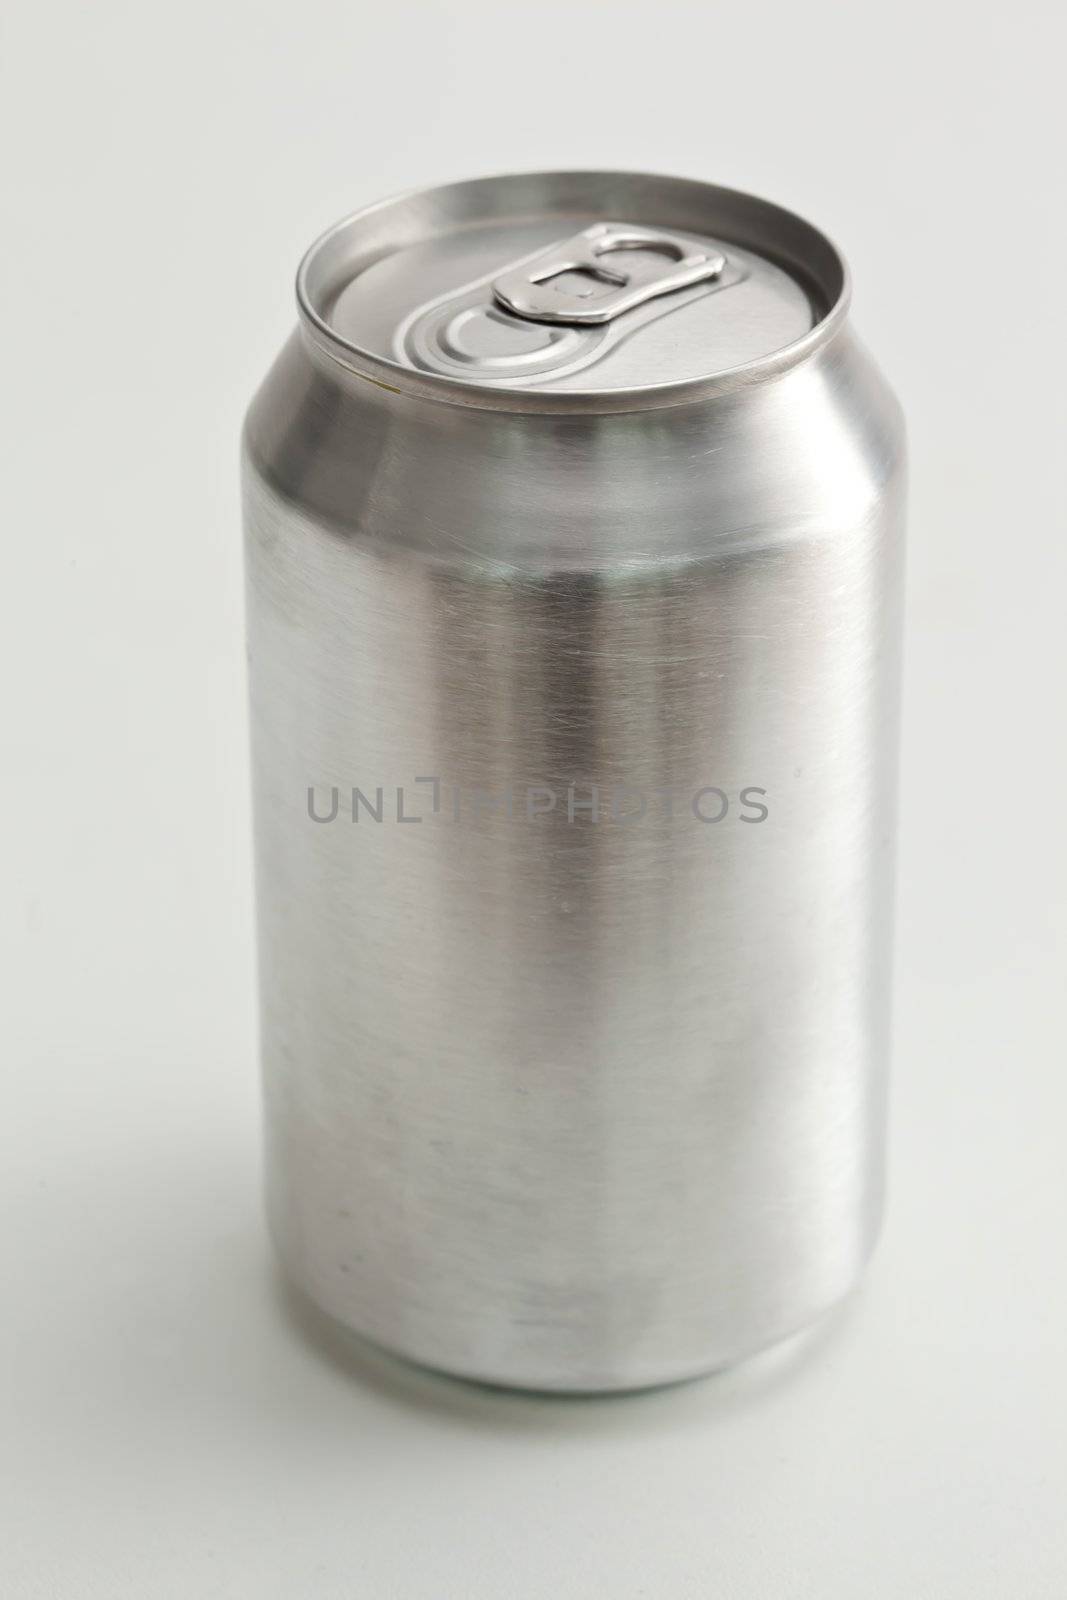 Aluminium closed can by Wavebreakmedia